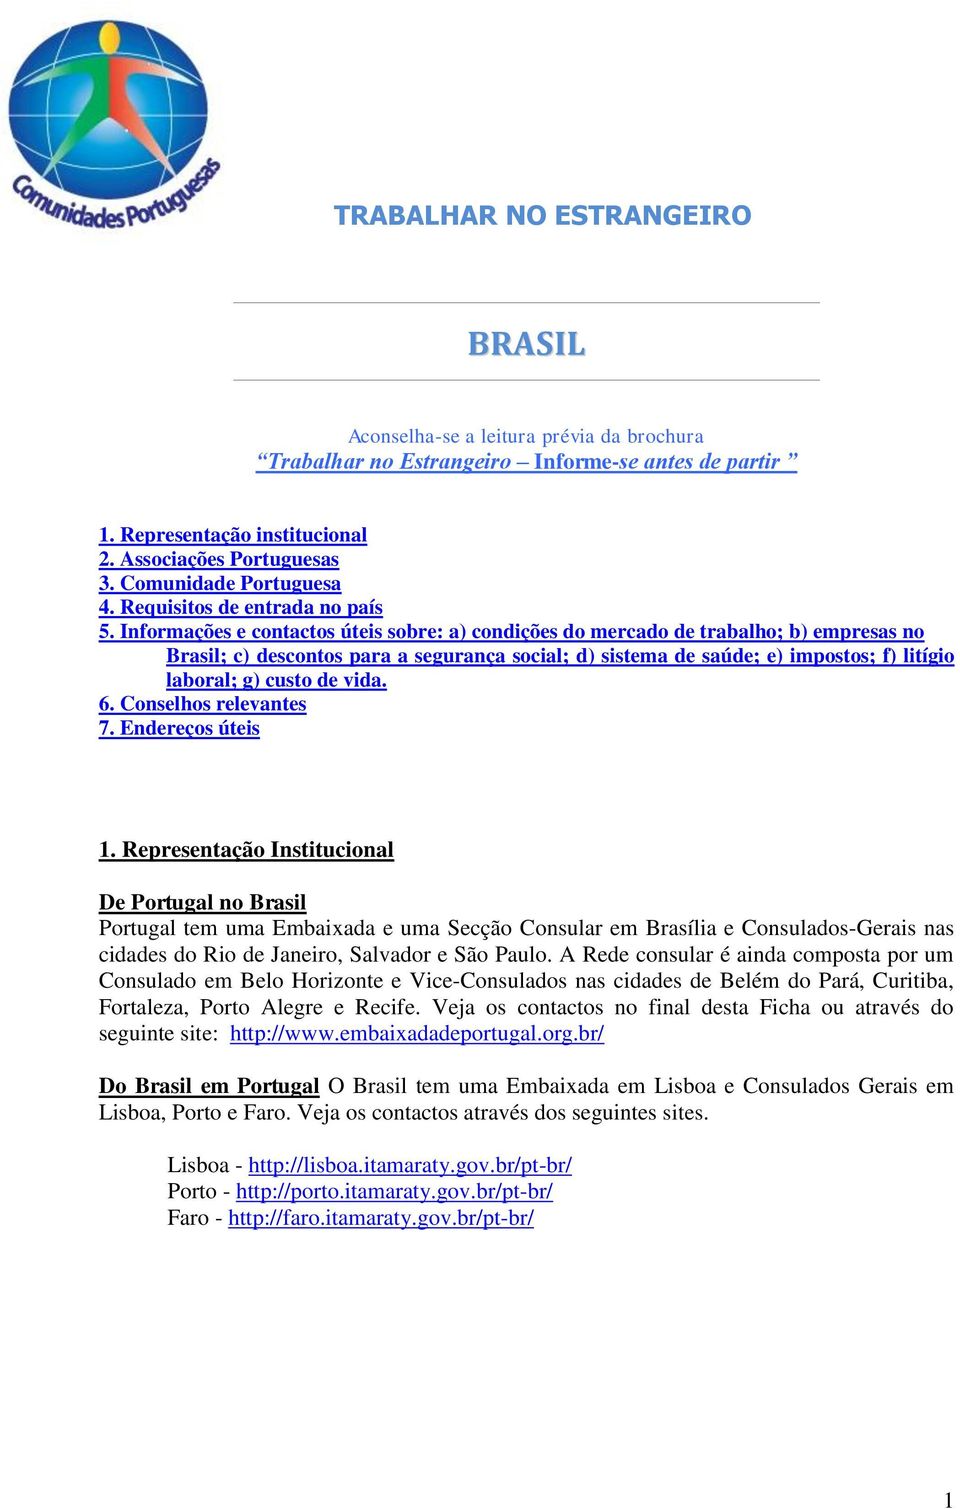 Informações e contactos úteis sobre: a) condições do mercado de trabalho; b) empresas no Brasil; c) descontos para a segurança social; d) sistema de saúde; e) impostos; f) litígio laboral; g) custo